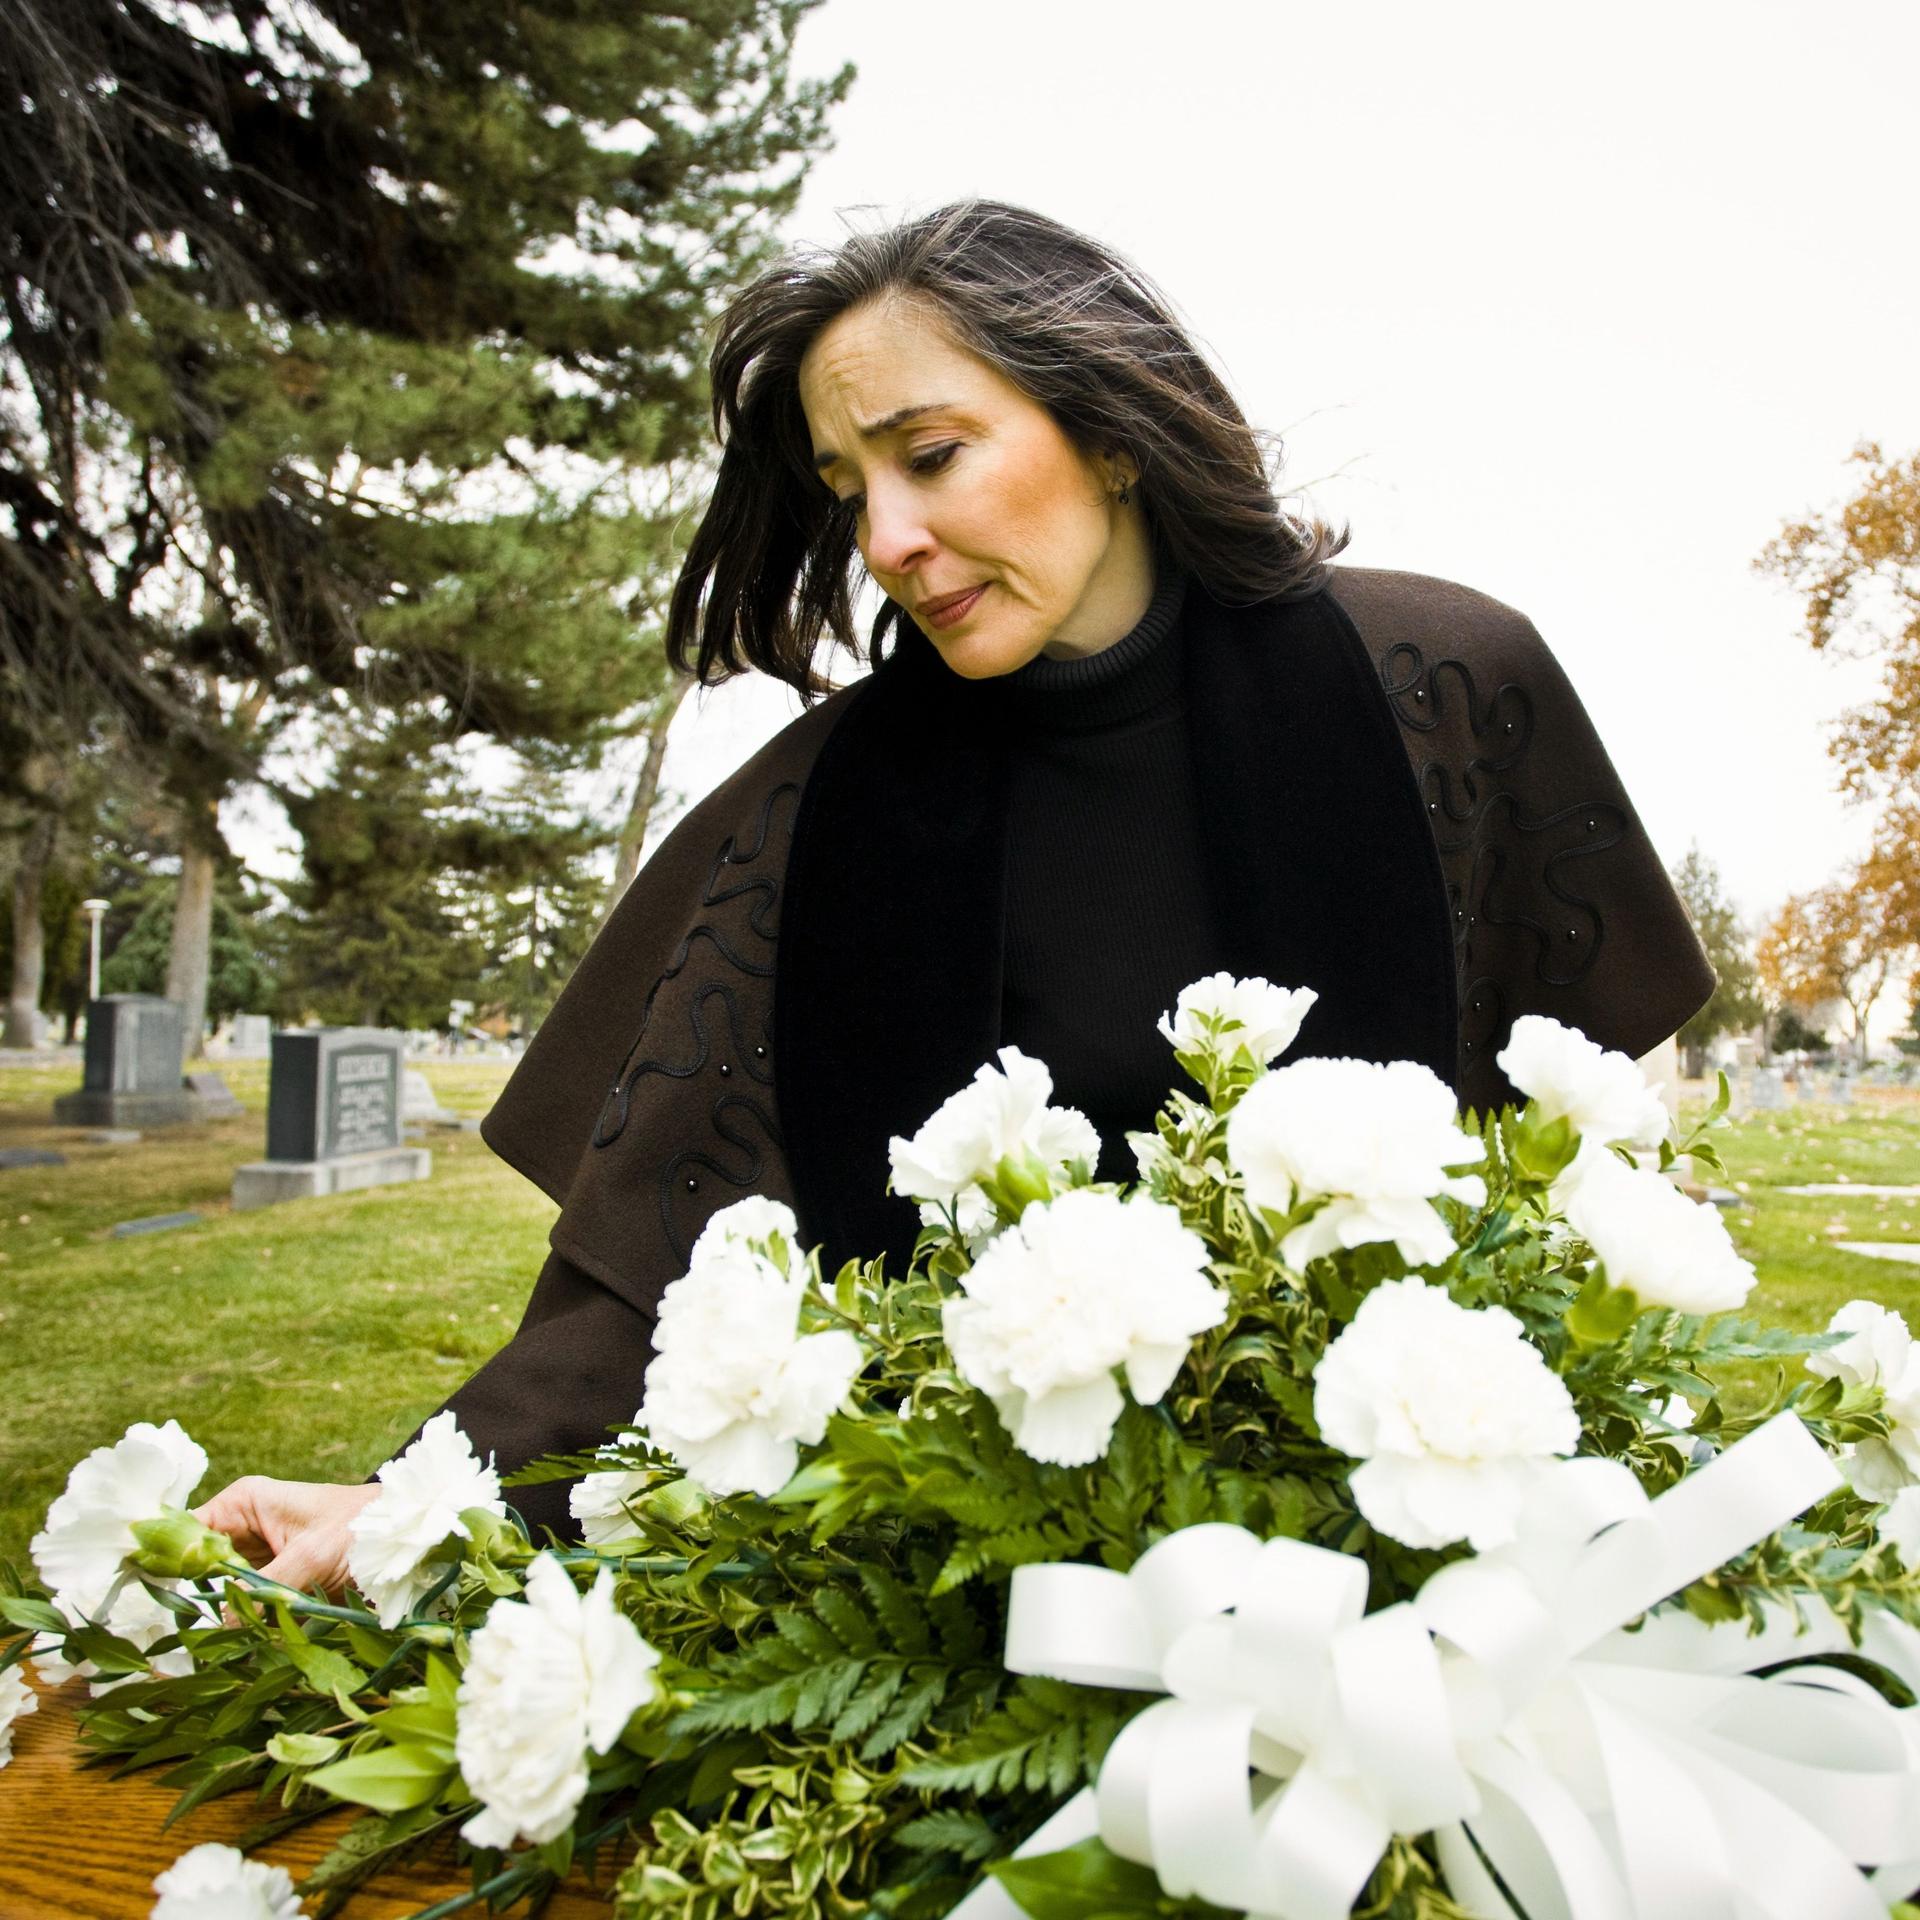 Eine Frau trauert an einem frischen Grab, das mit weißen Blumen geschmückt ist